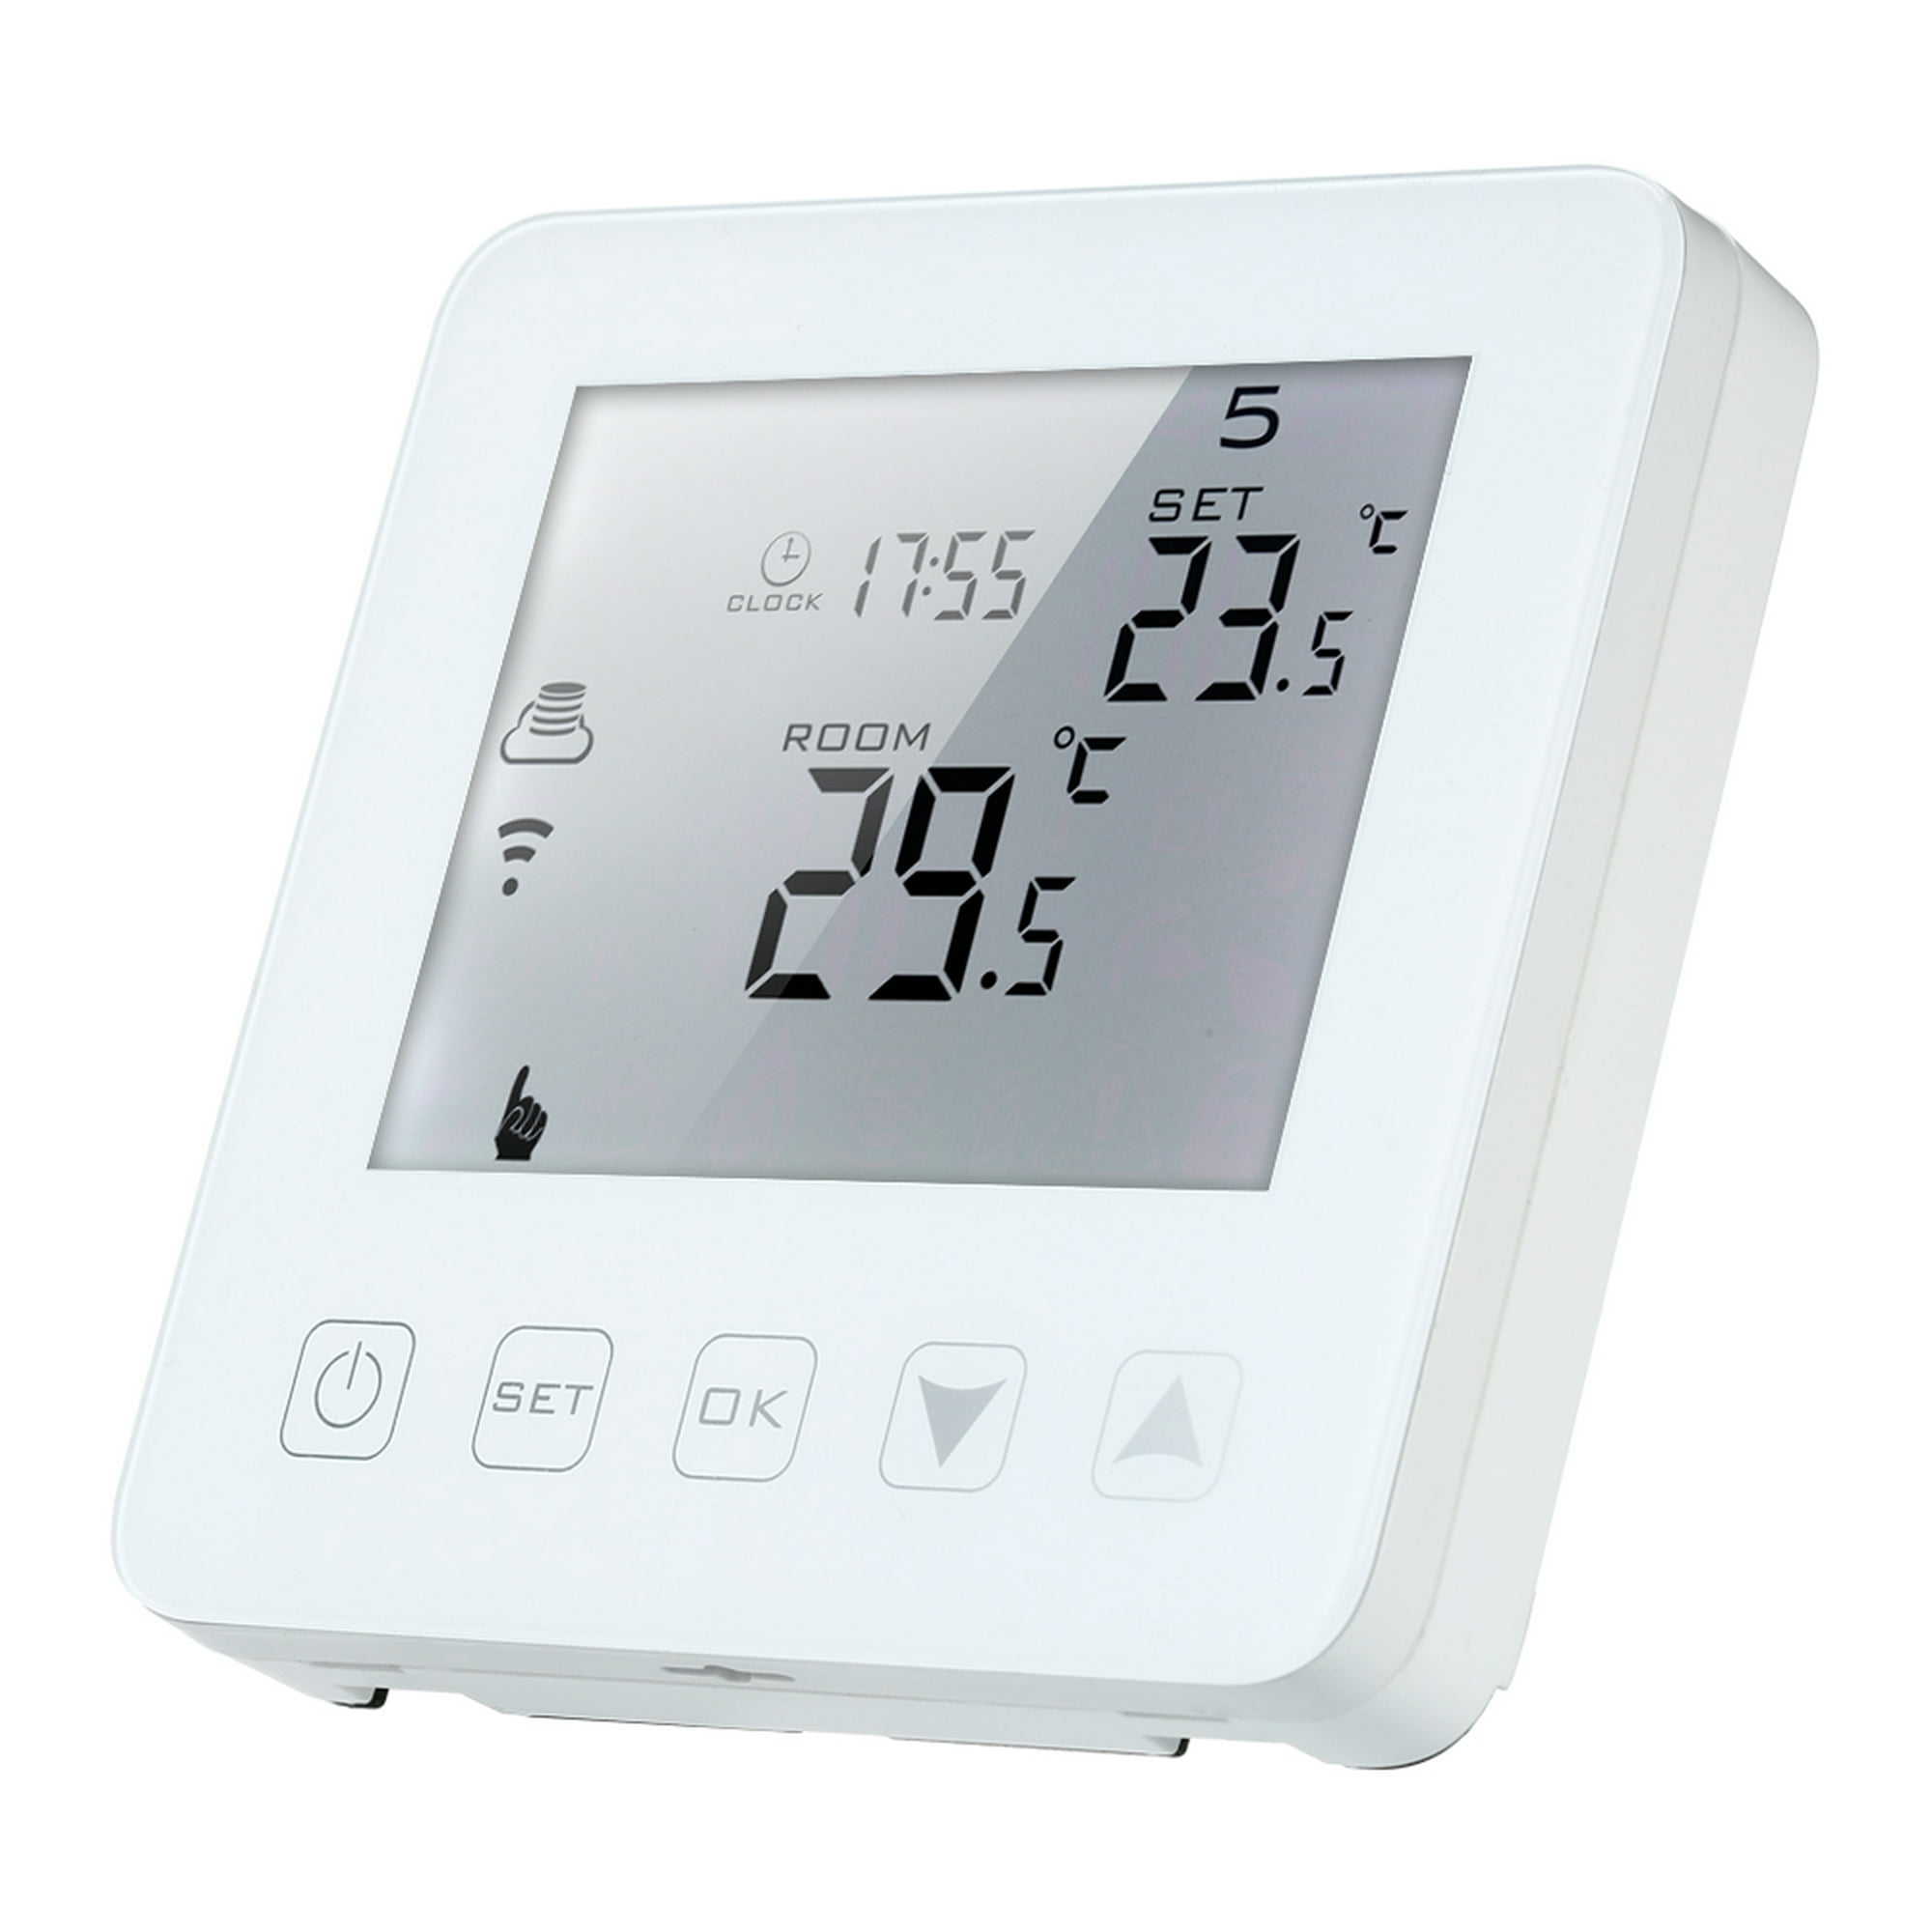 Termostato de caldera de Gas de calefacción de agua programable 3A pantalla  táctil LCD con retroiluminación blanca regulador de temperatura voz